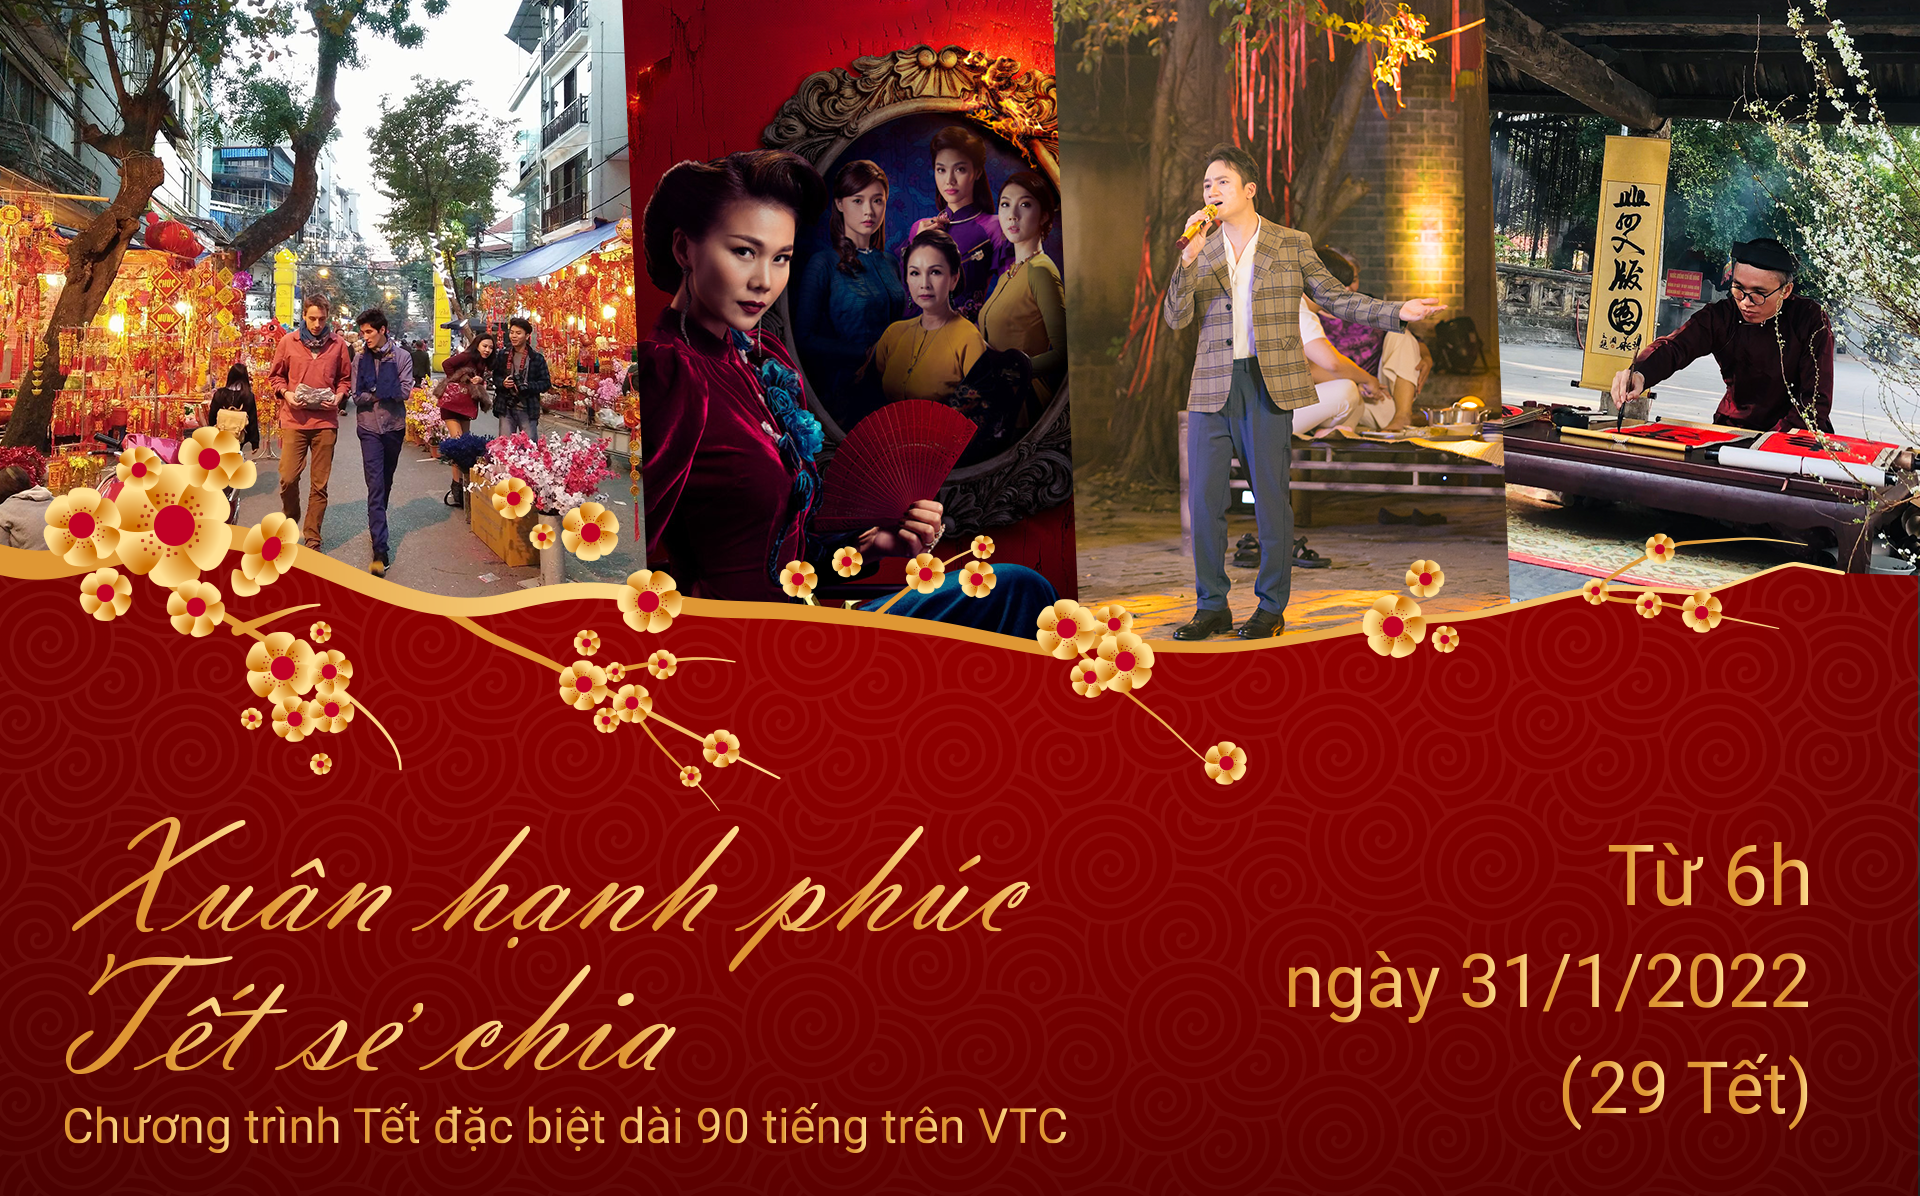 Văn Mai Hương, Hòa Minzy và loạt sao Việt hứa hẹn khuấy động đêm Giao thừa trên sóng truyền hình - Ảnh 5.